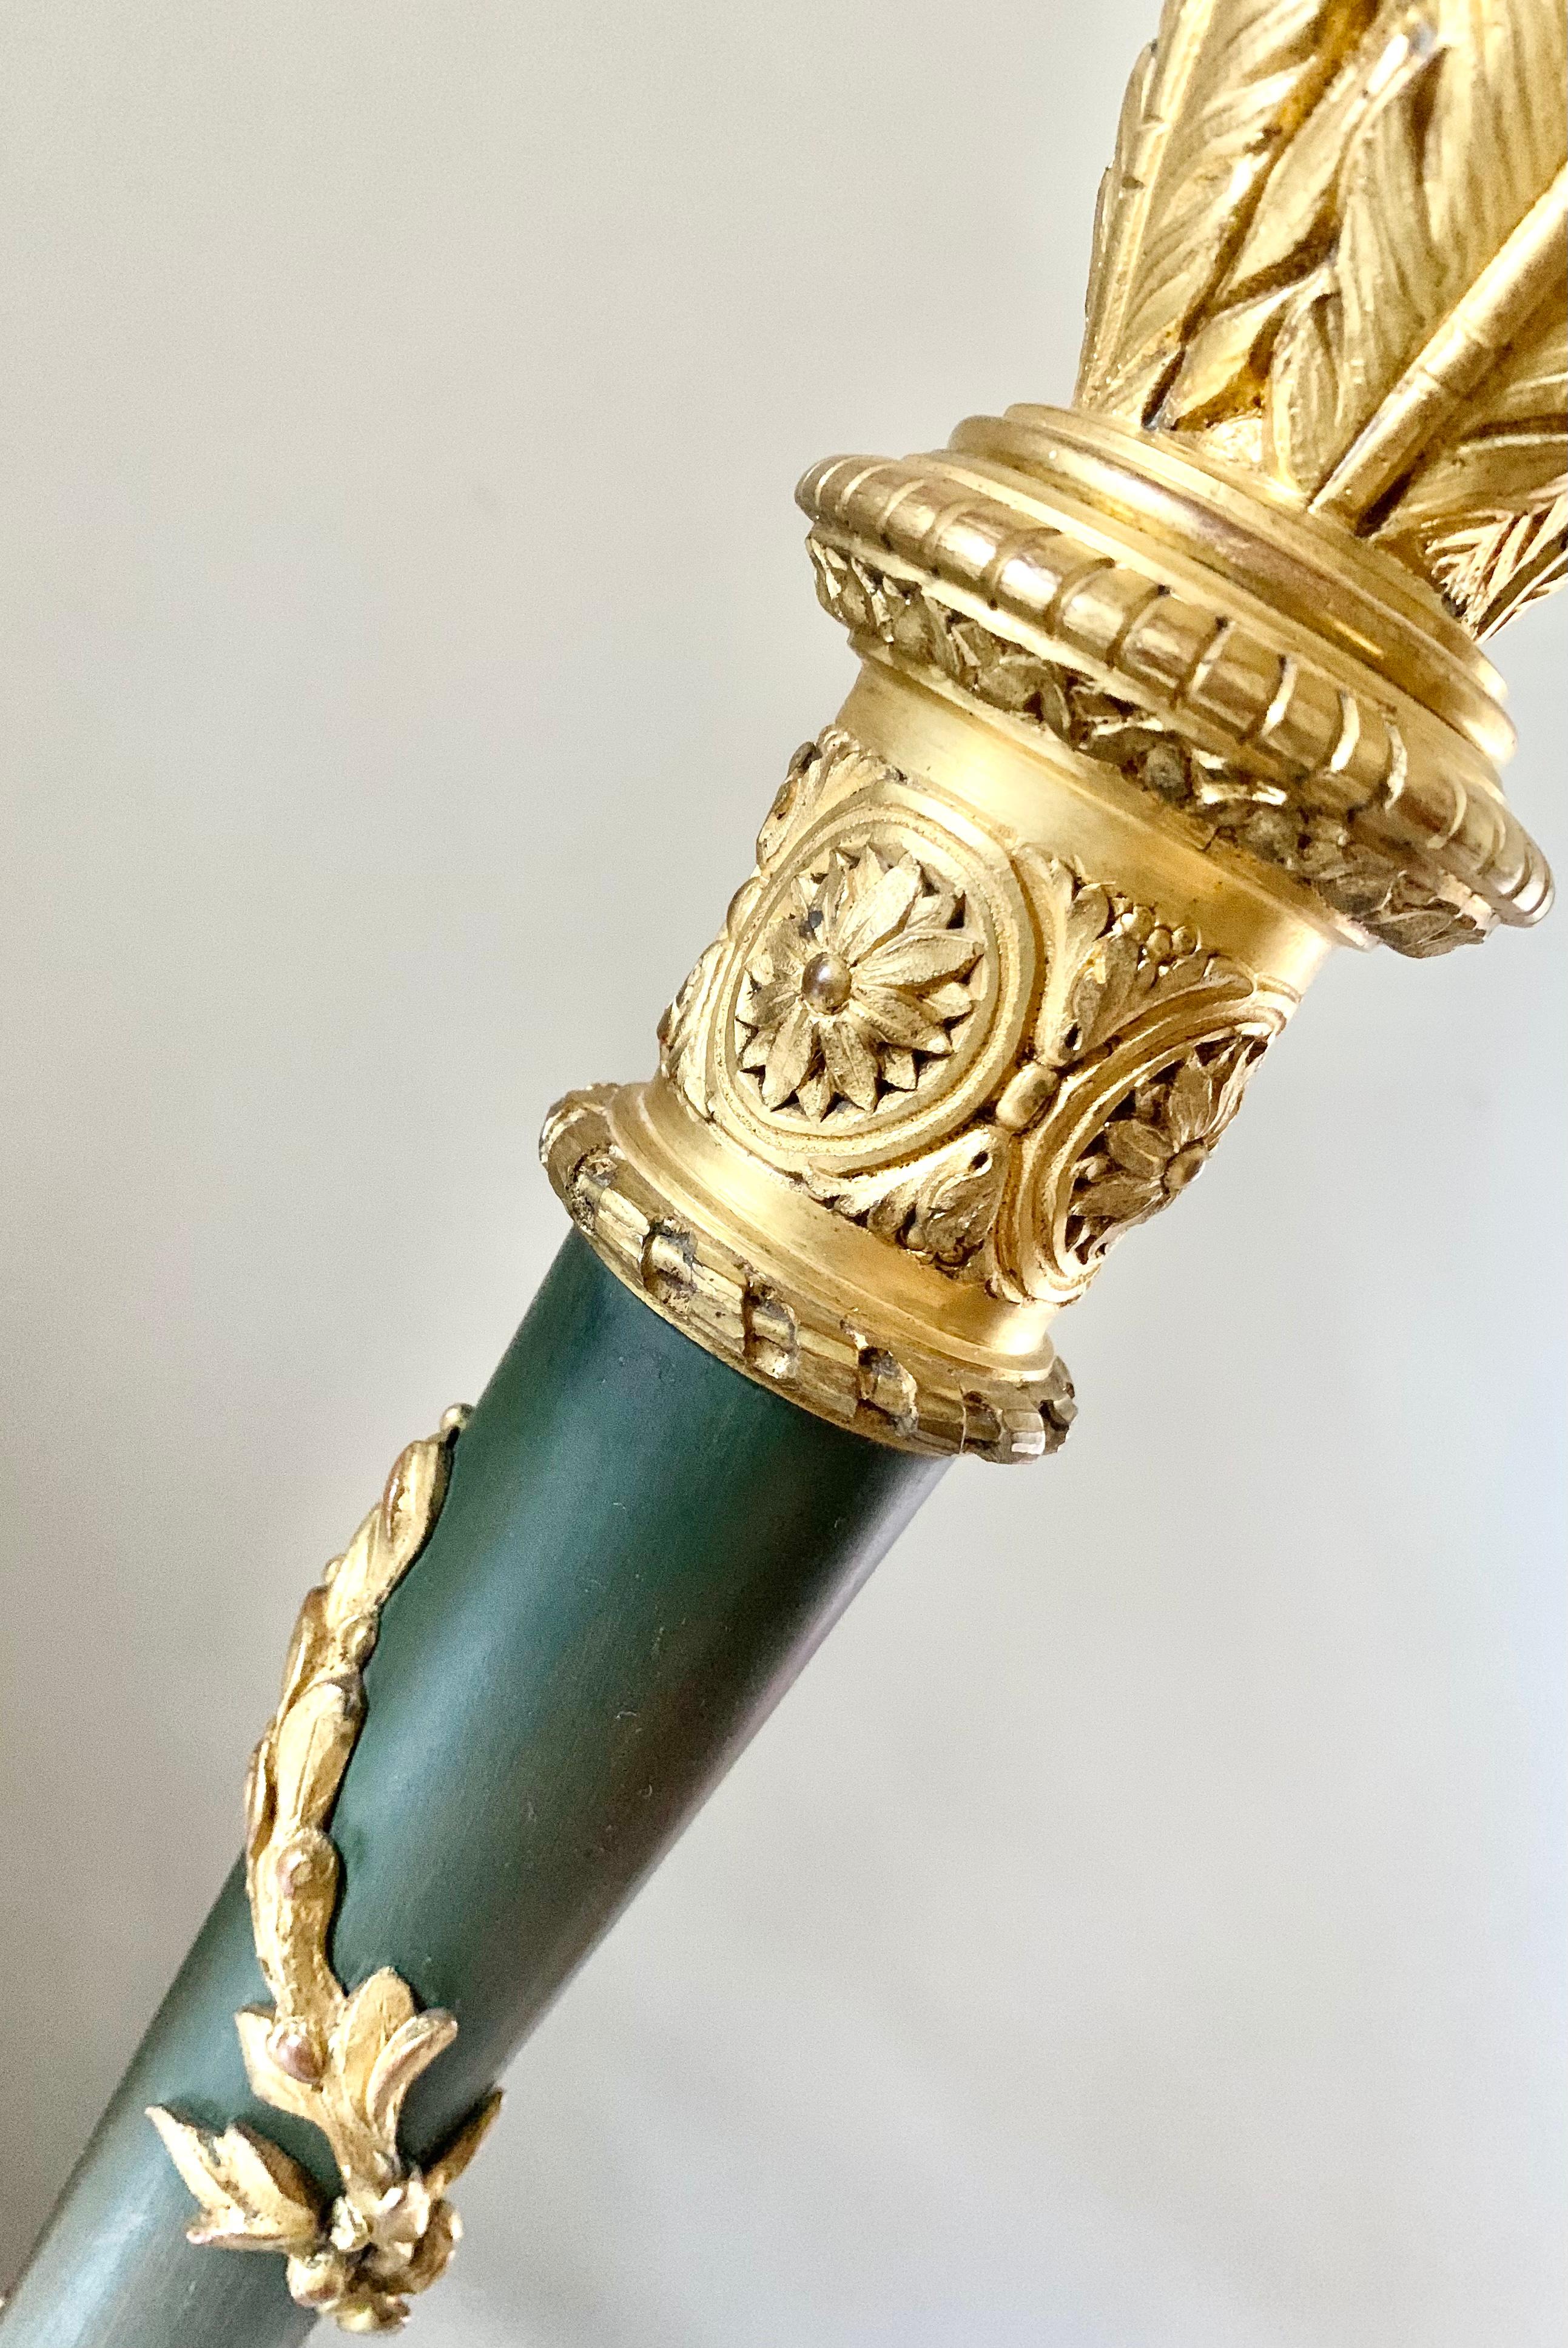 Außergewöhnliche Qualität, zugeschrieben Maison Gagneau, Paris vergoldet und patiniert Bronze Schreibtischlampe als Köcher von Pfeilen in der neoklassischen Geschmack entworfen. Runder Sockel mit Lorbeerkranzmotiv, auf dem sich ein patinierter